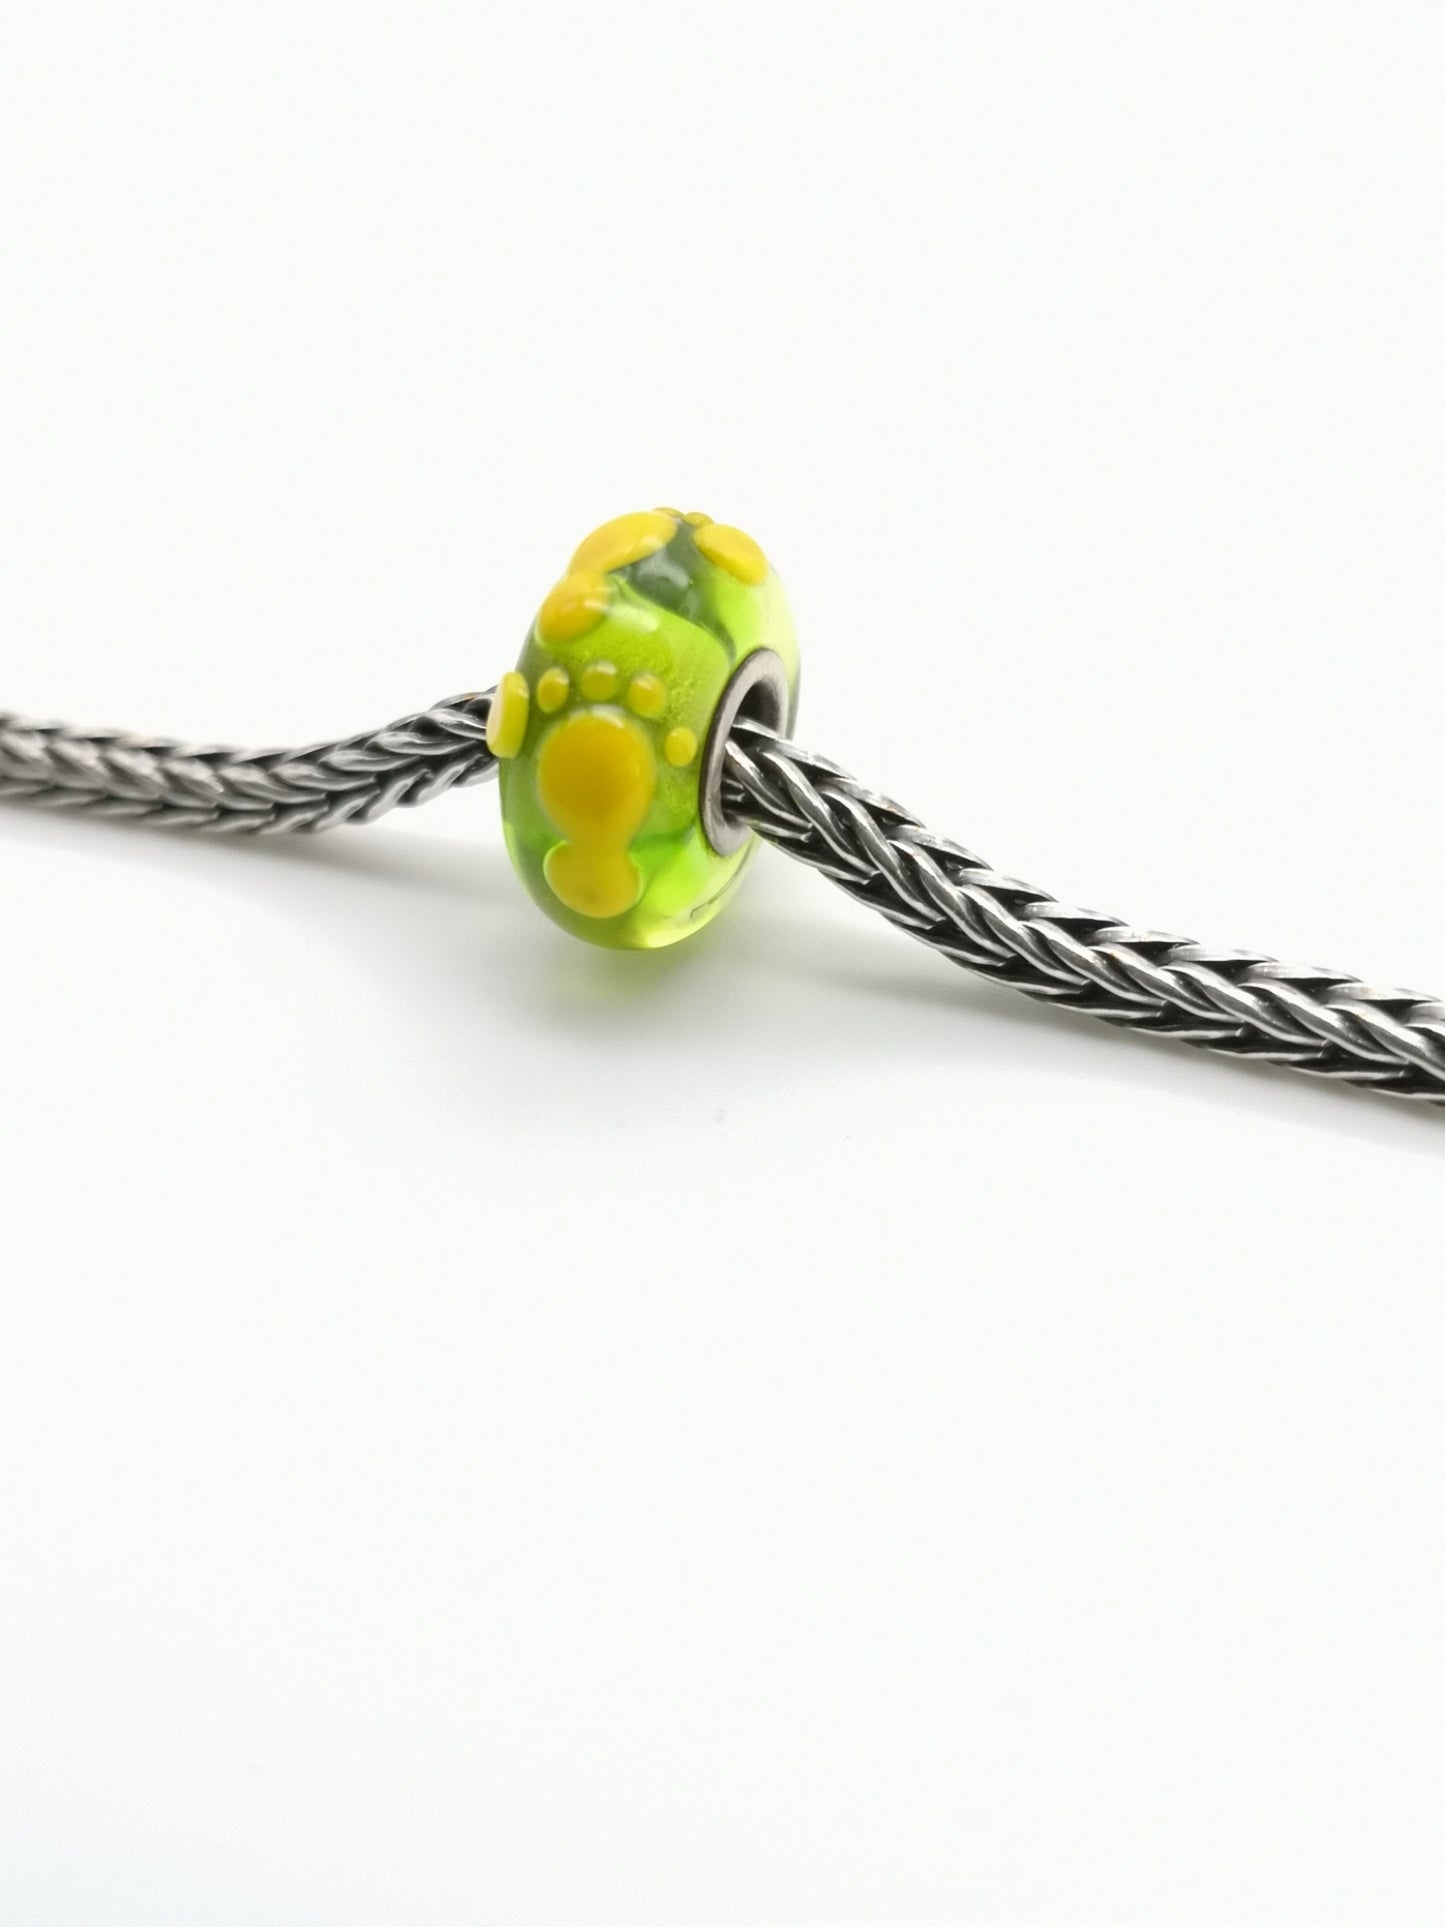 Beads non trollbeads - Unico Artigianale - Piedini gialli